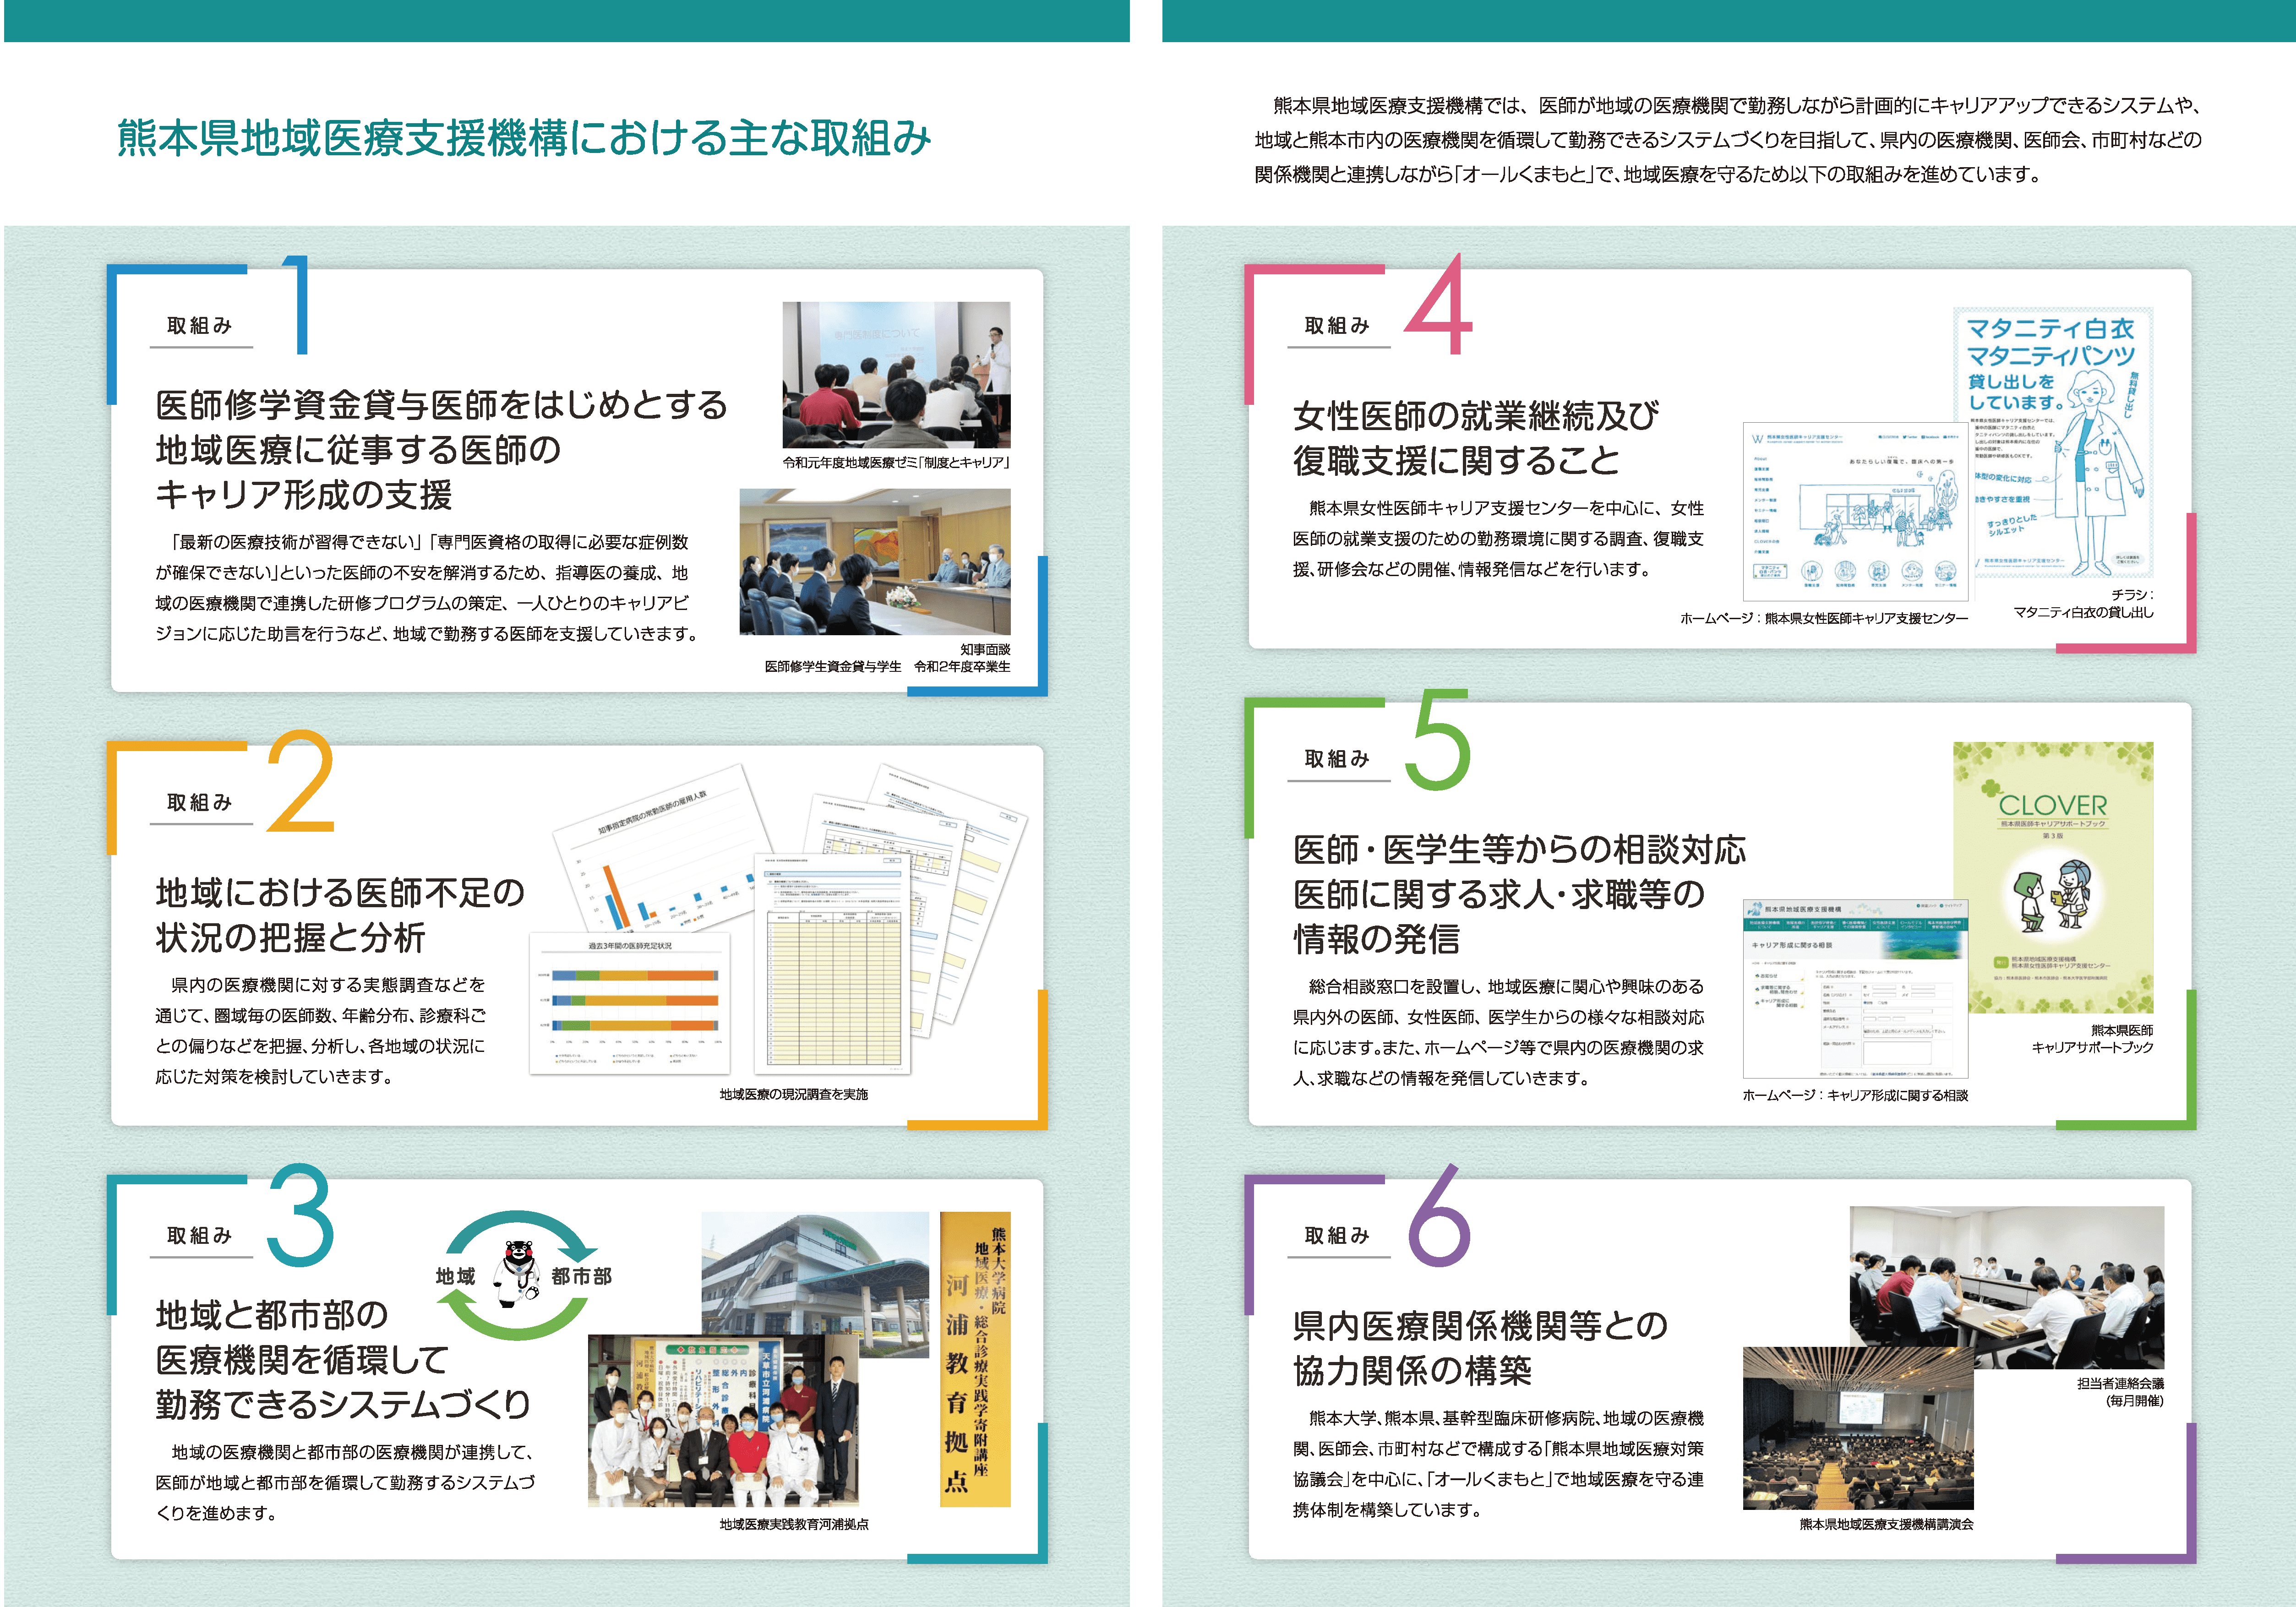 熊本県地域医療支援機構リーフレット2021_ページ_3.png